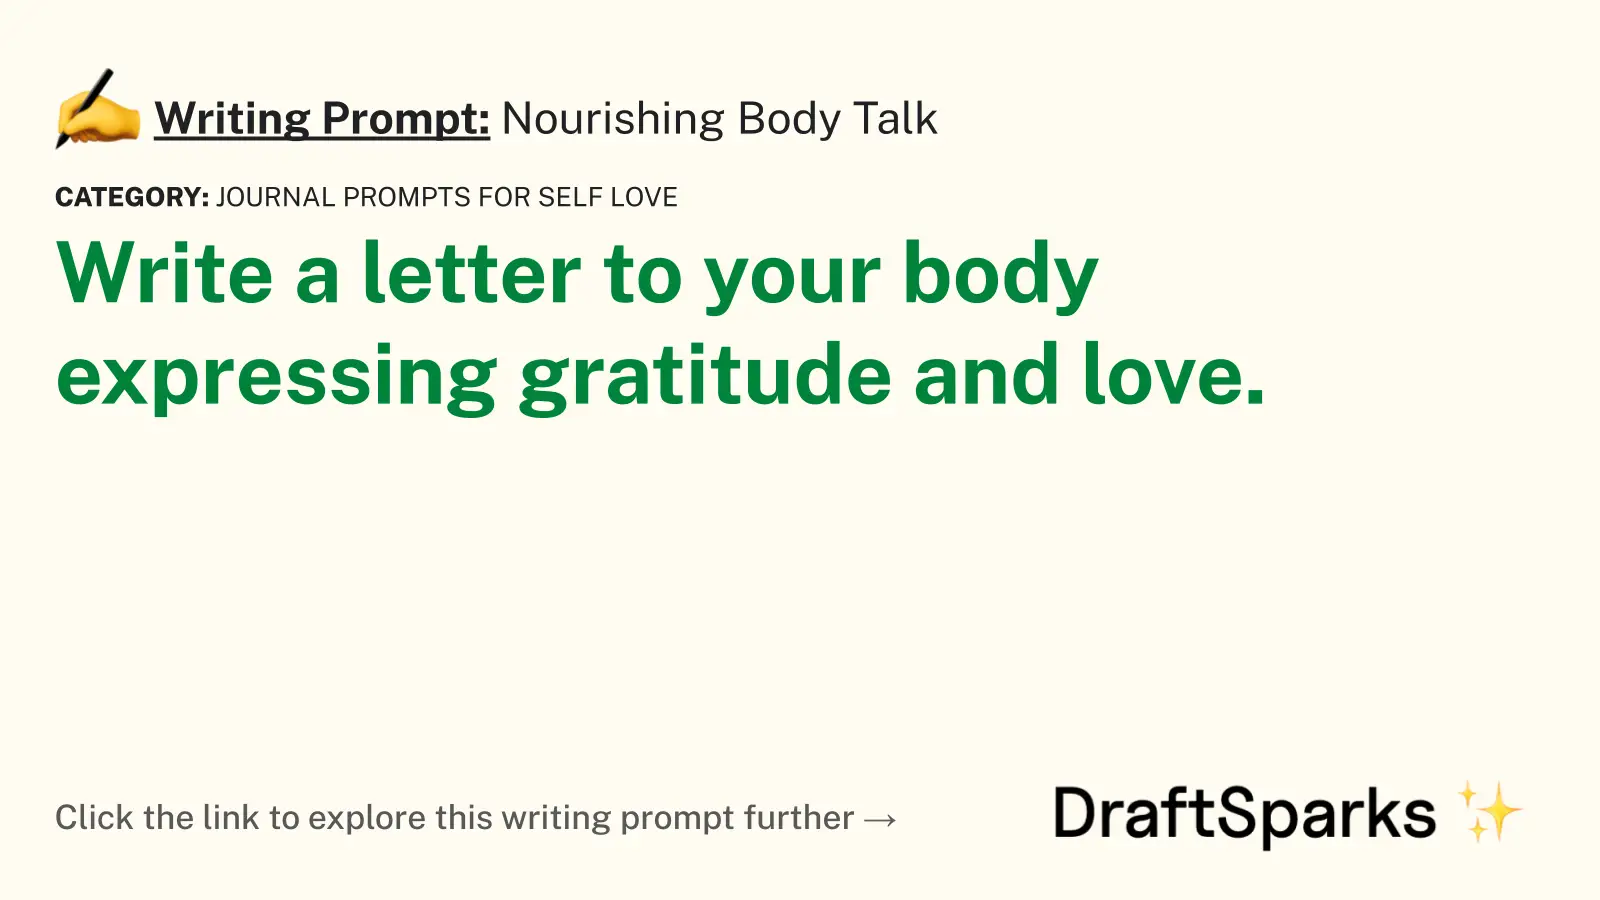 Nourishing Body Talk